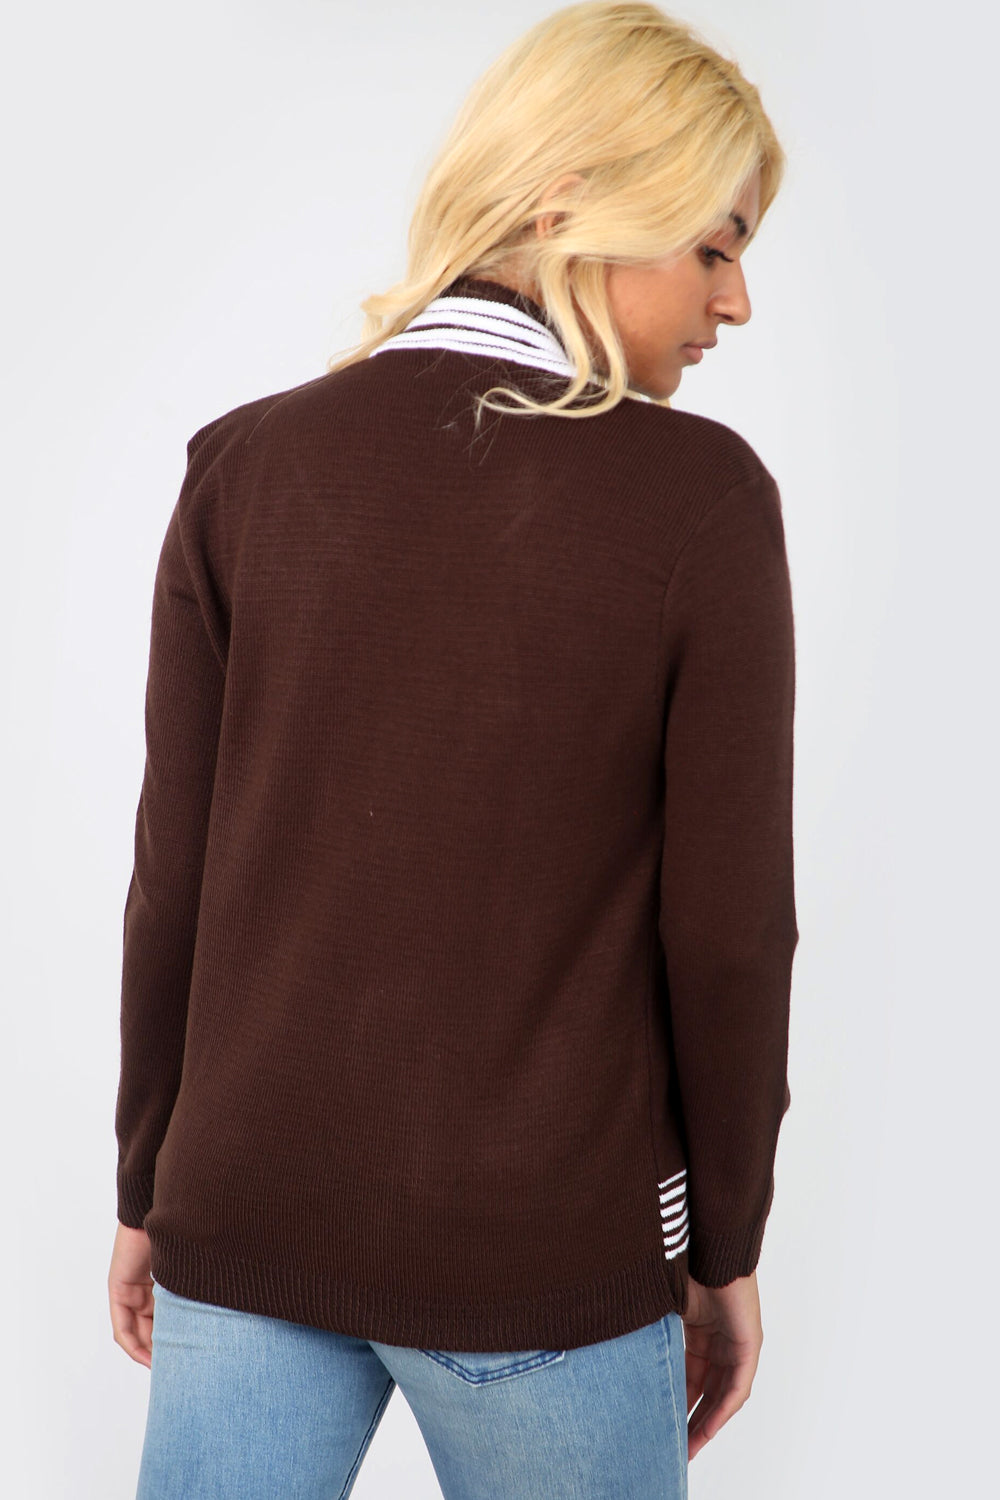 Long Sleeve Monochrome Knitted Twin Jumper - bejealous-com